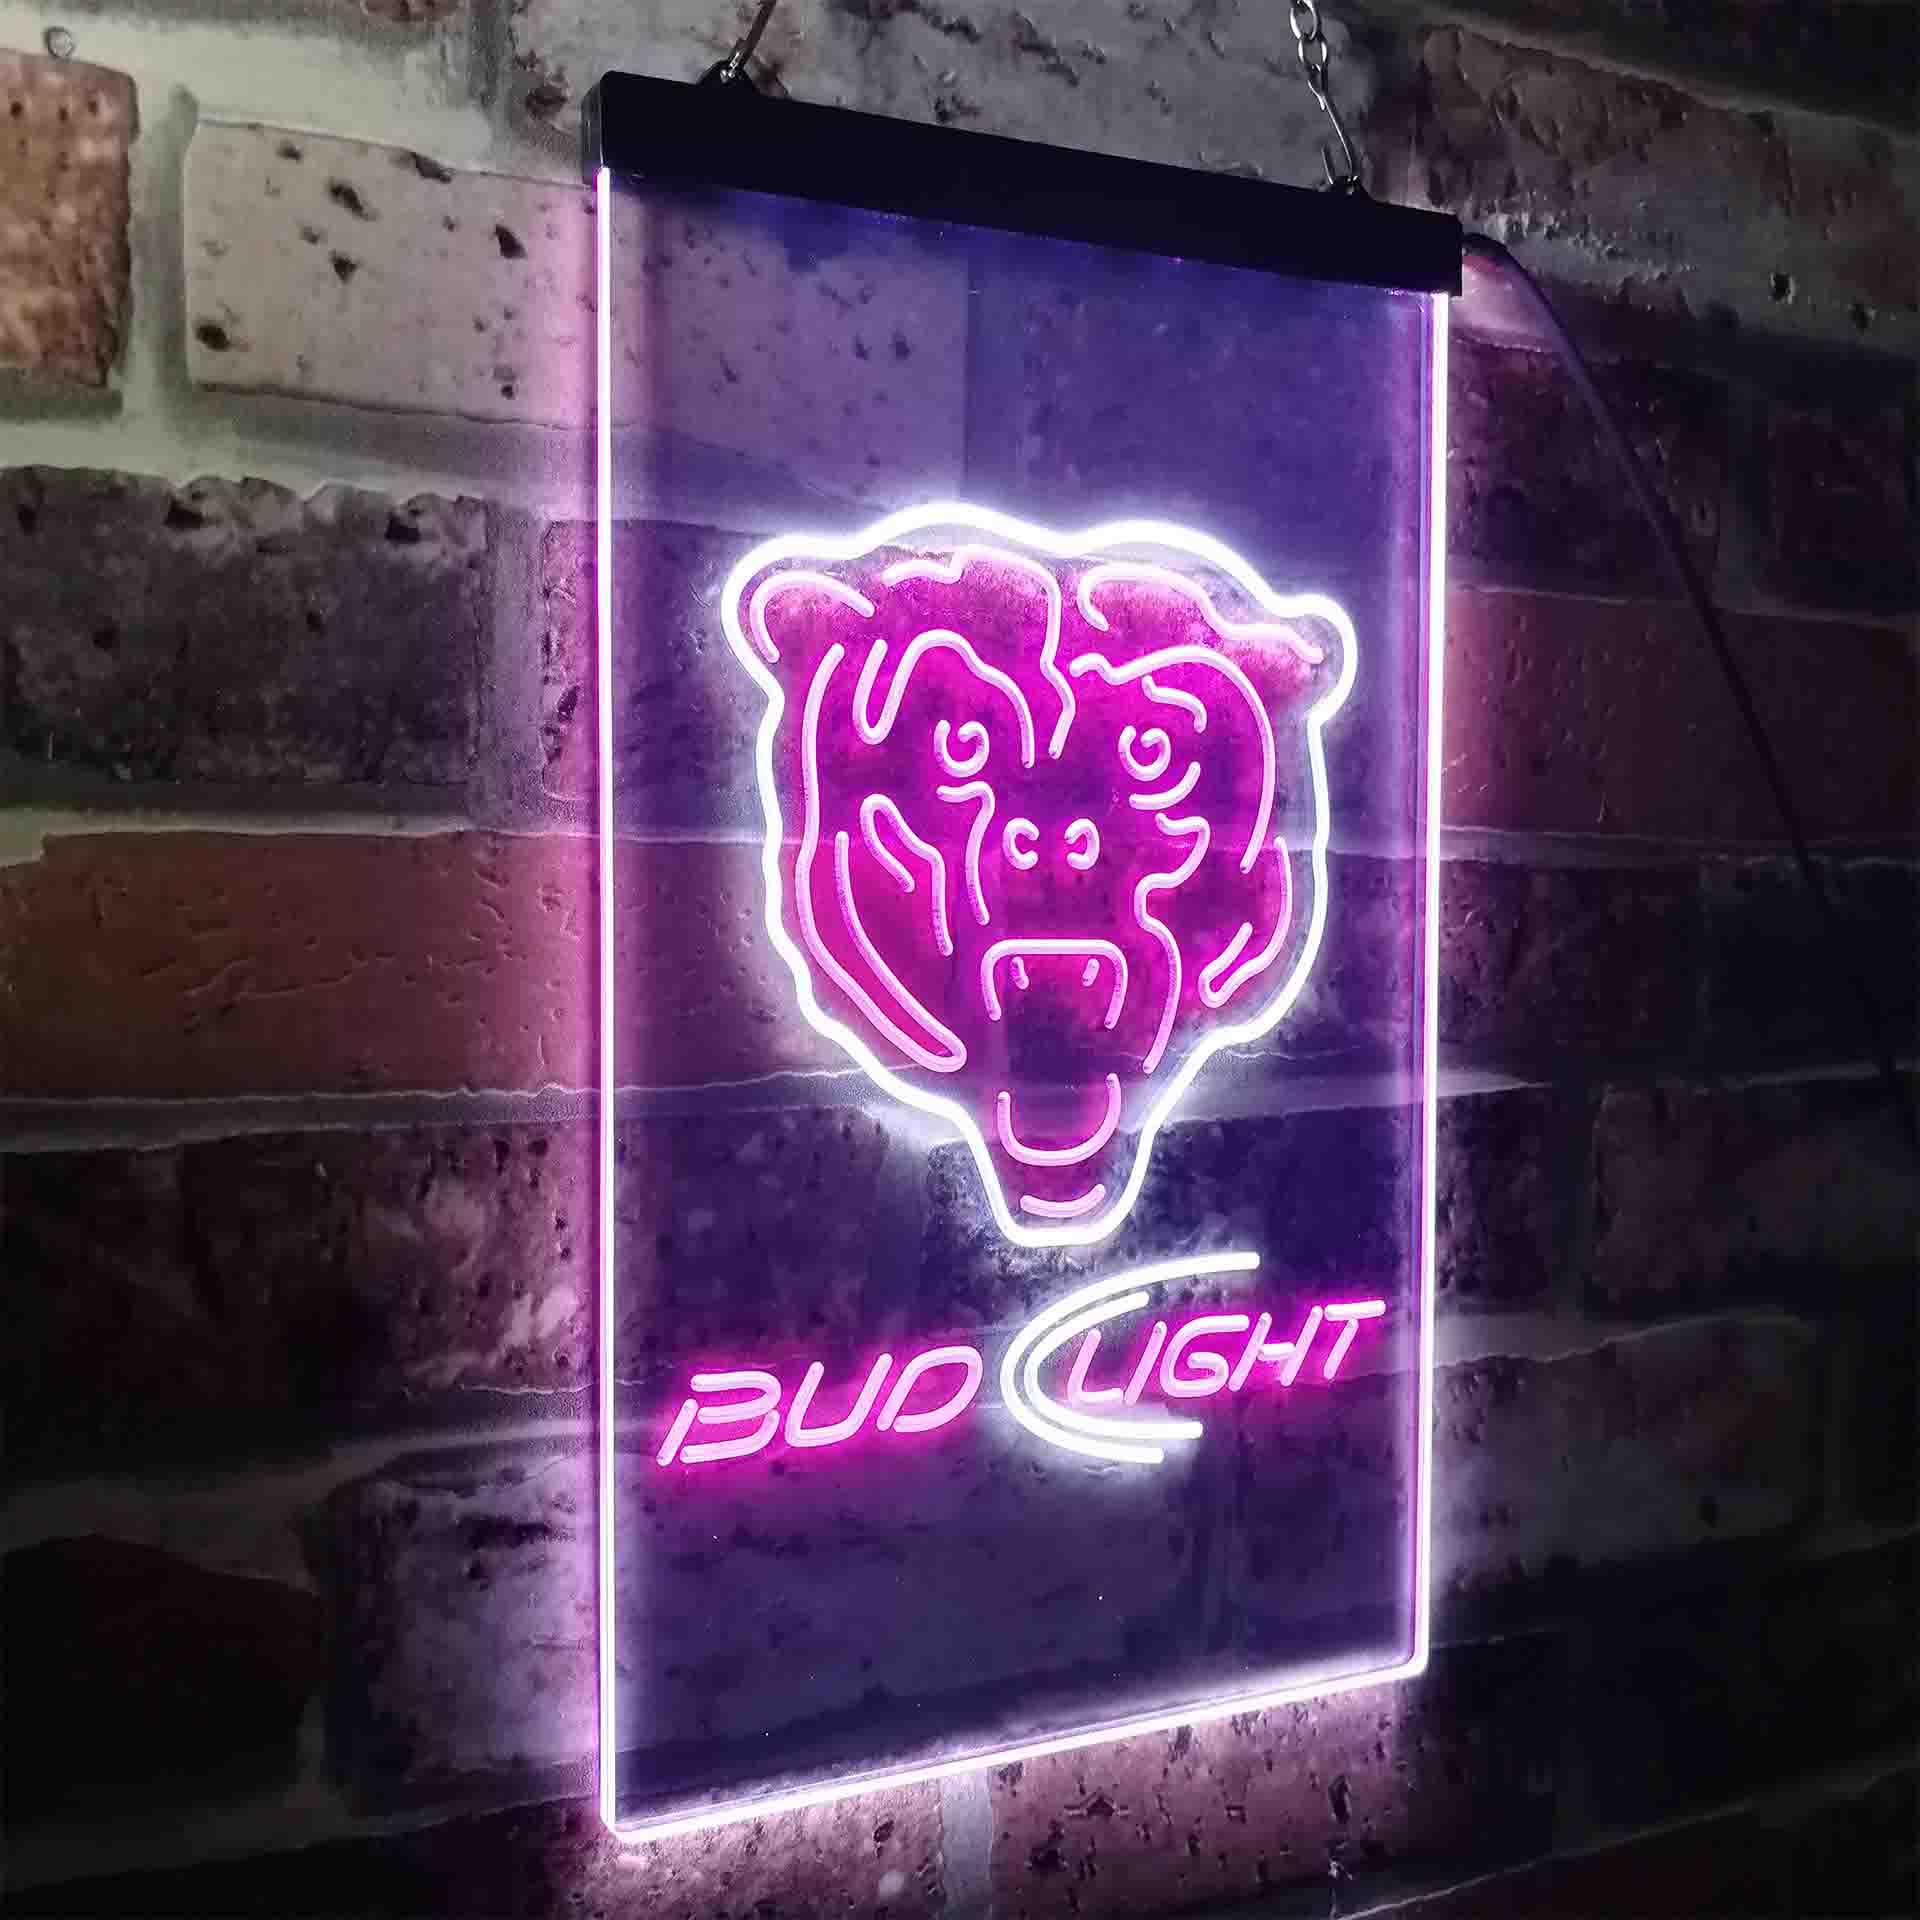 Bud Light Chicago Bears LED Neon Sign